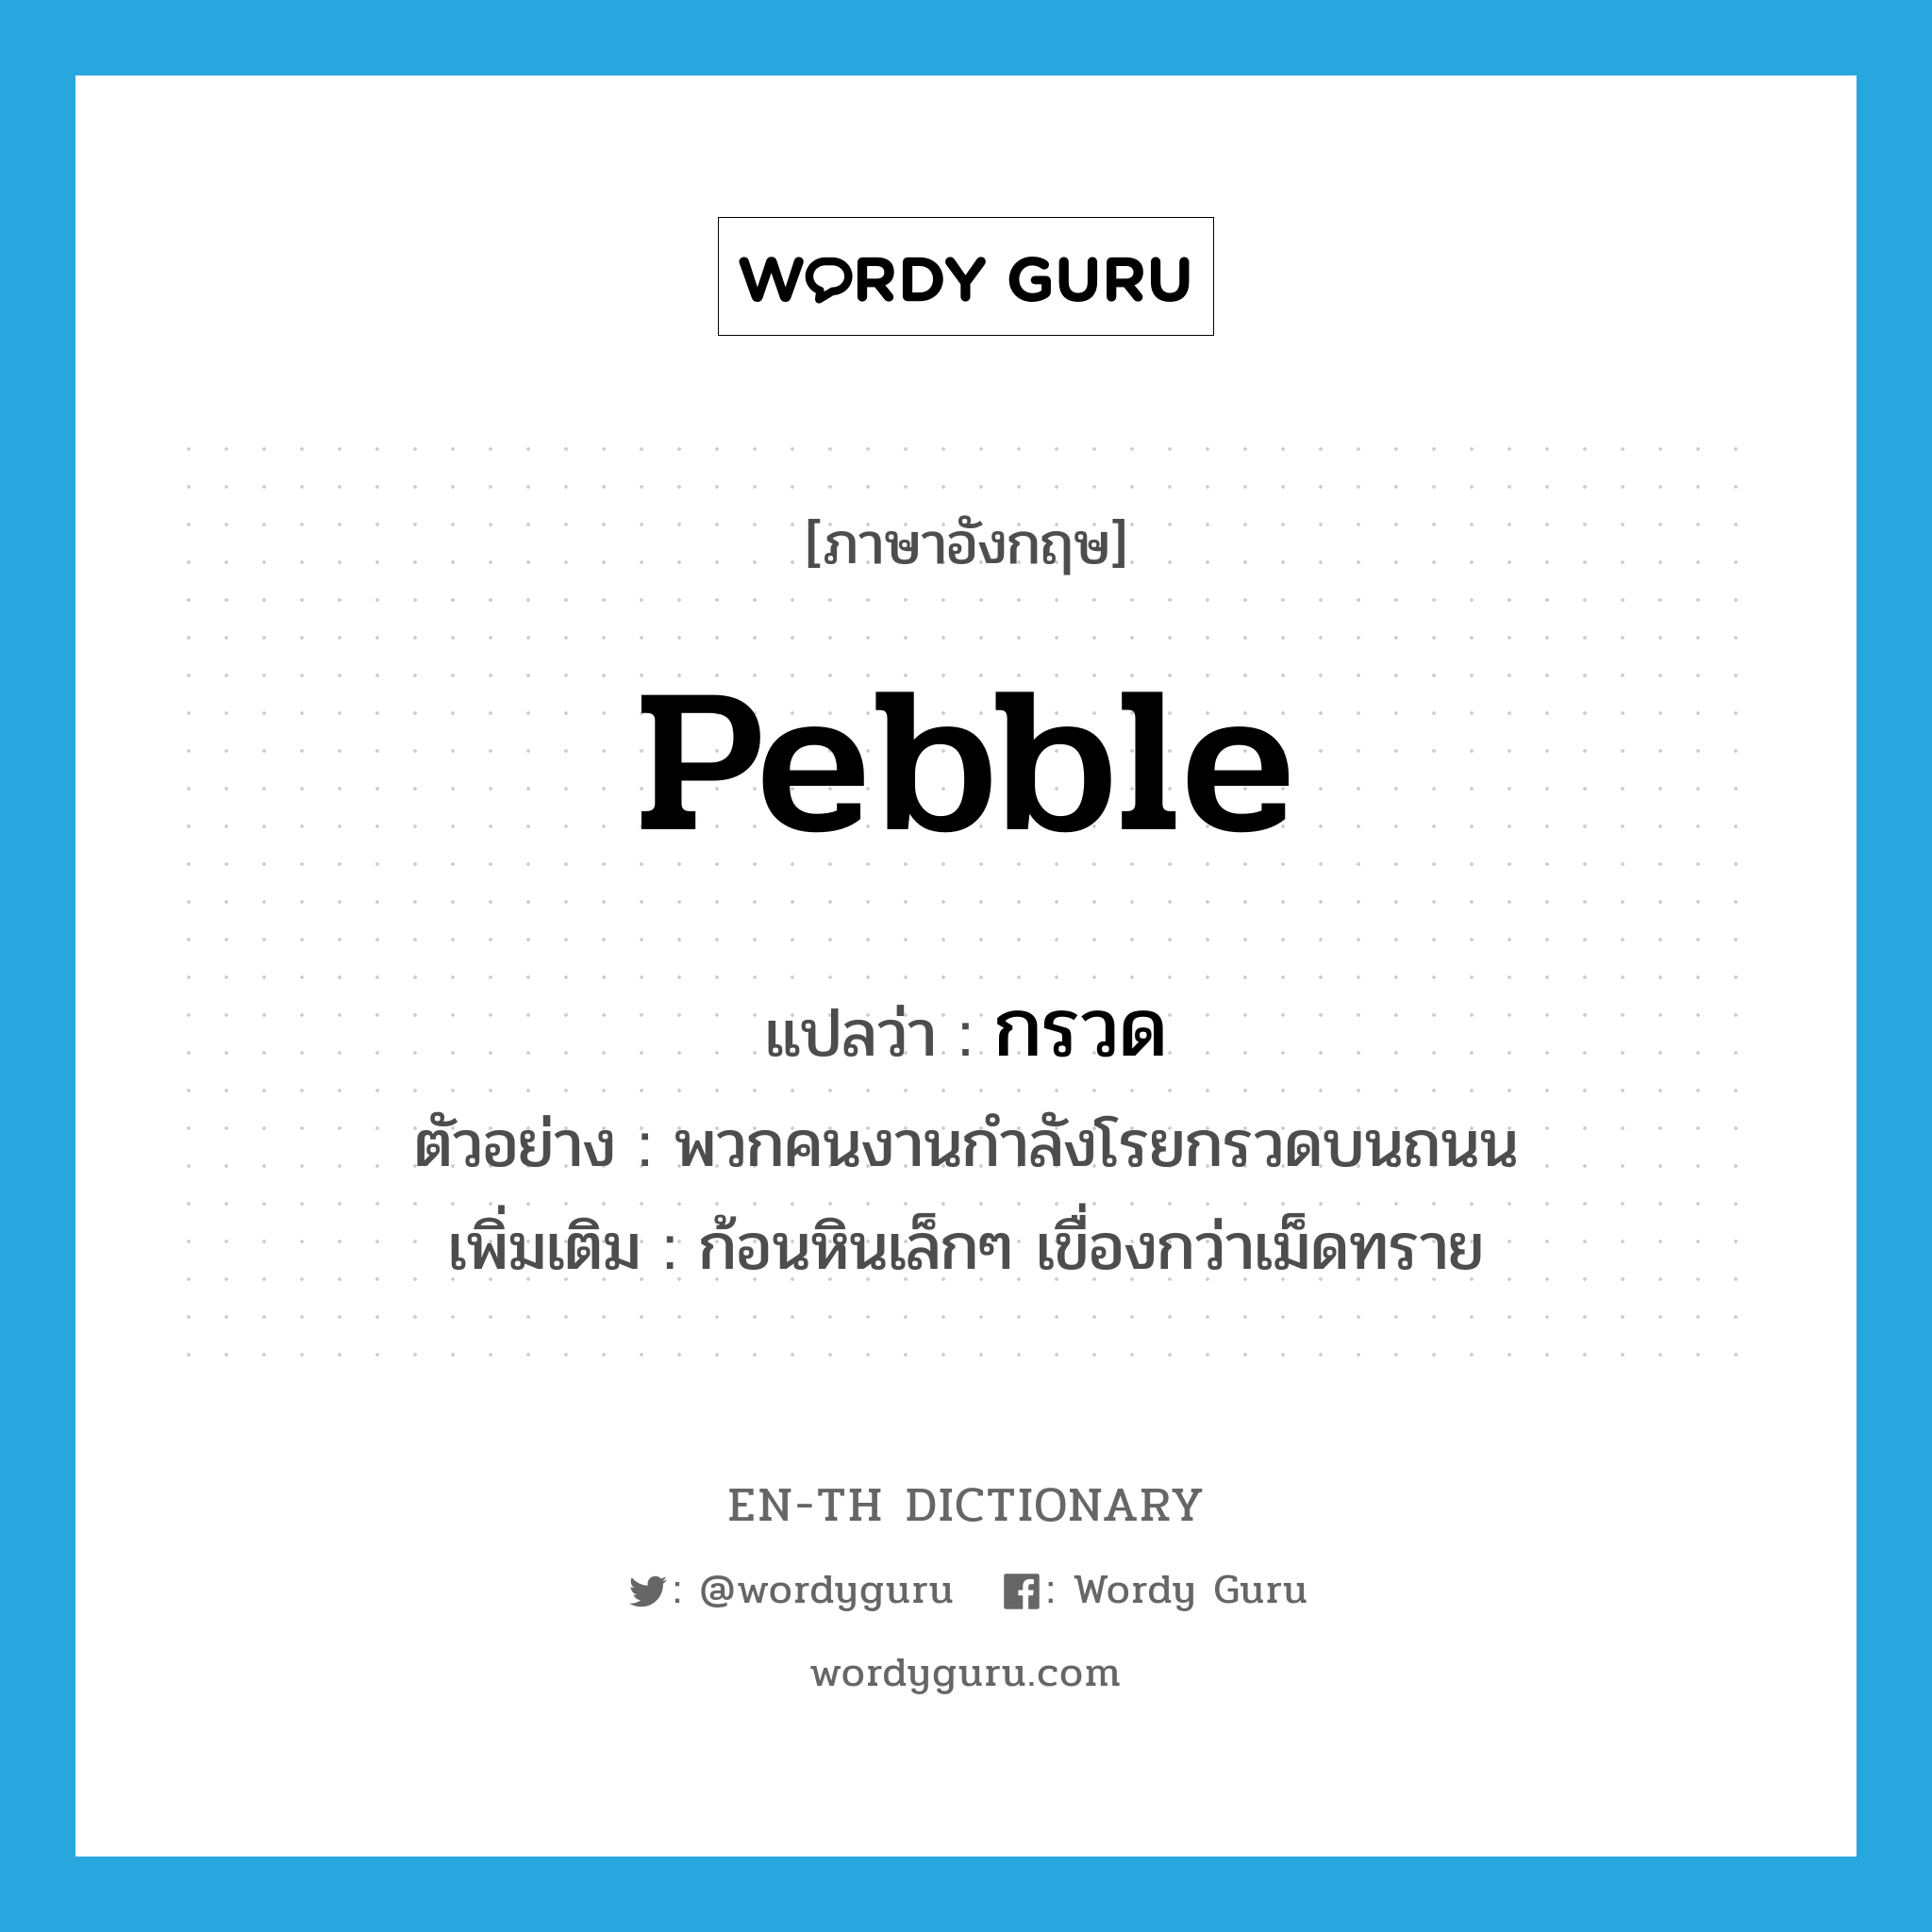 pebble แปลว่า?, คำศัพท์ภาษาอังกฤษ pebble แปลว่า กรวด ประเภท N ตัวอย่าง พวกคนงานกำลังโรยกรวดบนถนน เพิ่มเติม ก้อนหินเล็กๆ เขื่องกว่าเม็ดทราย หมวด N